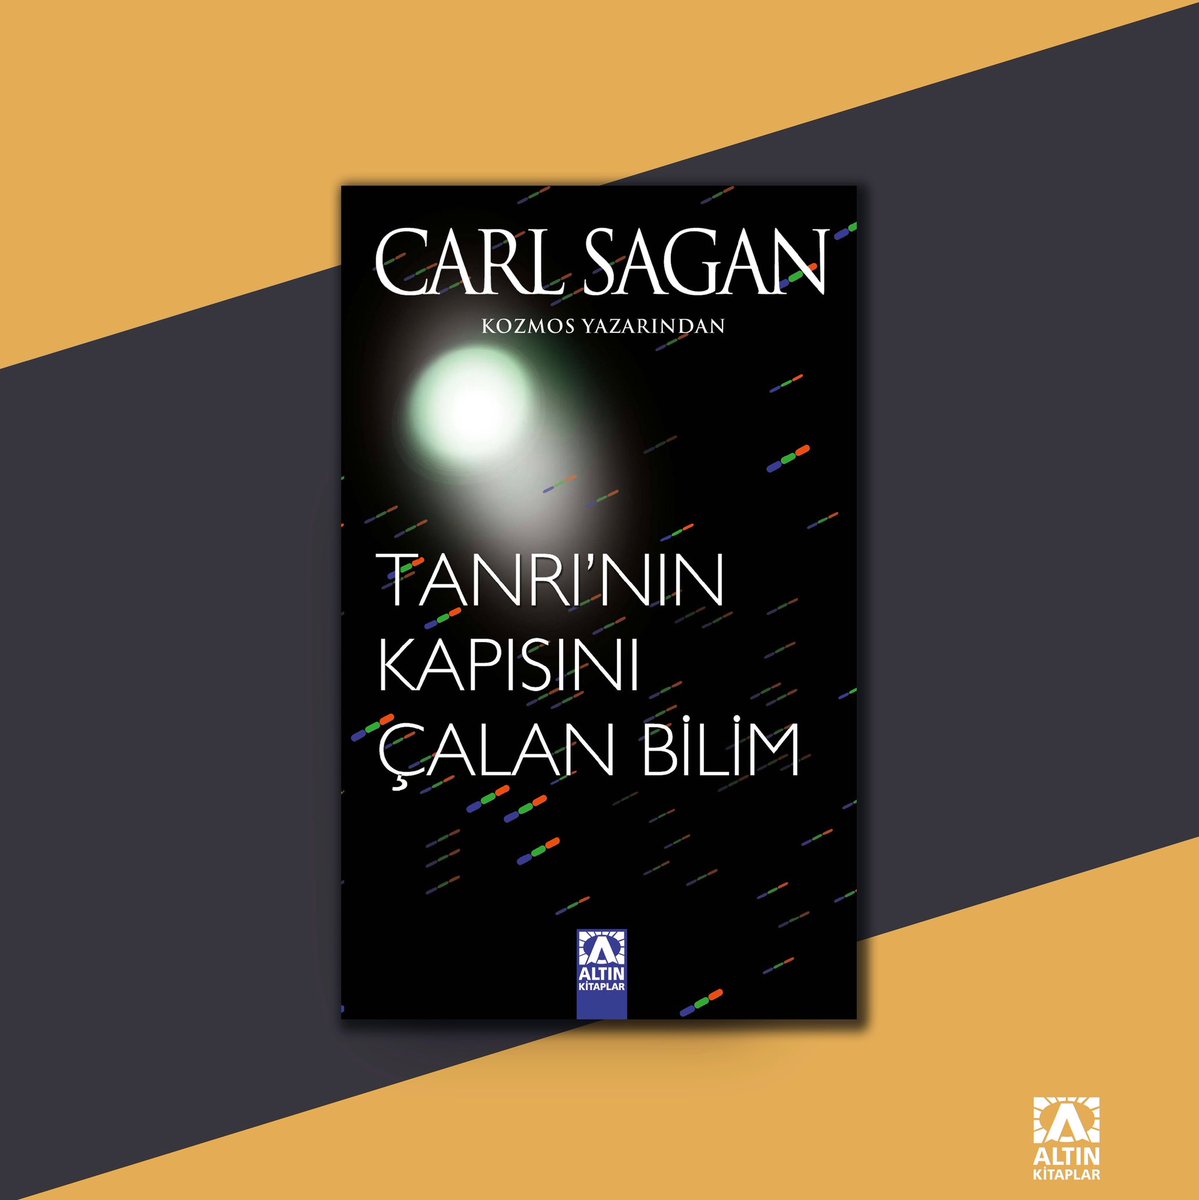 Carl Sagan Tanrı’nın Kapısını Çalan Bilim’de din ve bilim konusundaki fikirlerini ayrıntılı biçimde ortaya koyarken, evrenin enginliğinde kutsalın ne demek olduğunu anlamak için sürdürdüğü kişisel arayışını ve yolculuğunu da aktarıyor.